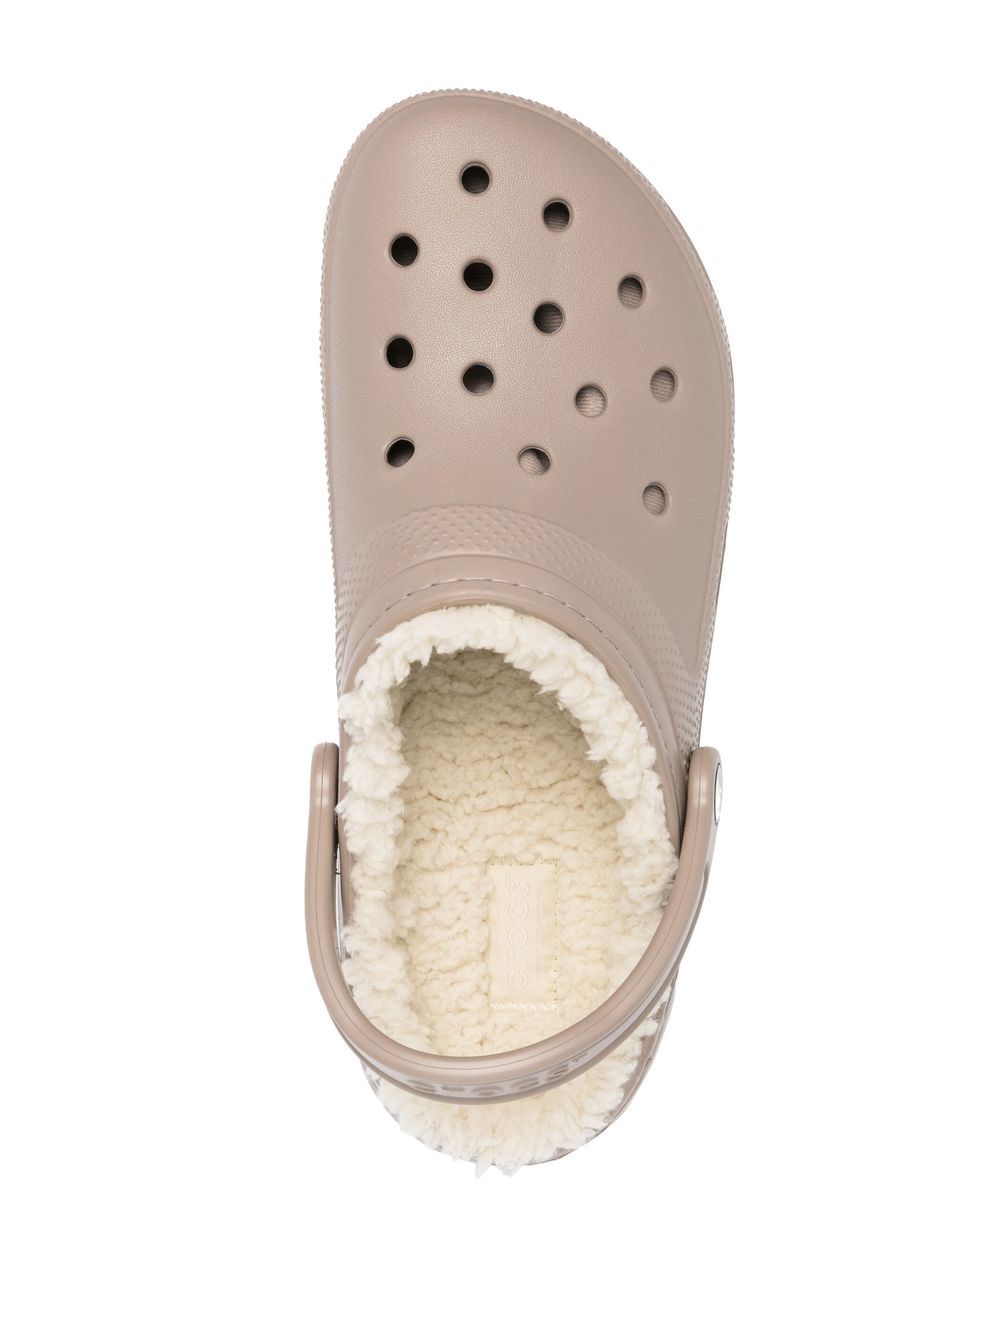 Crocs CROCS- Classic Lined Clog Sandals